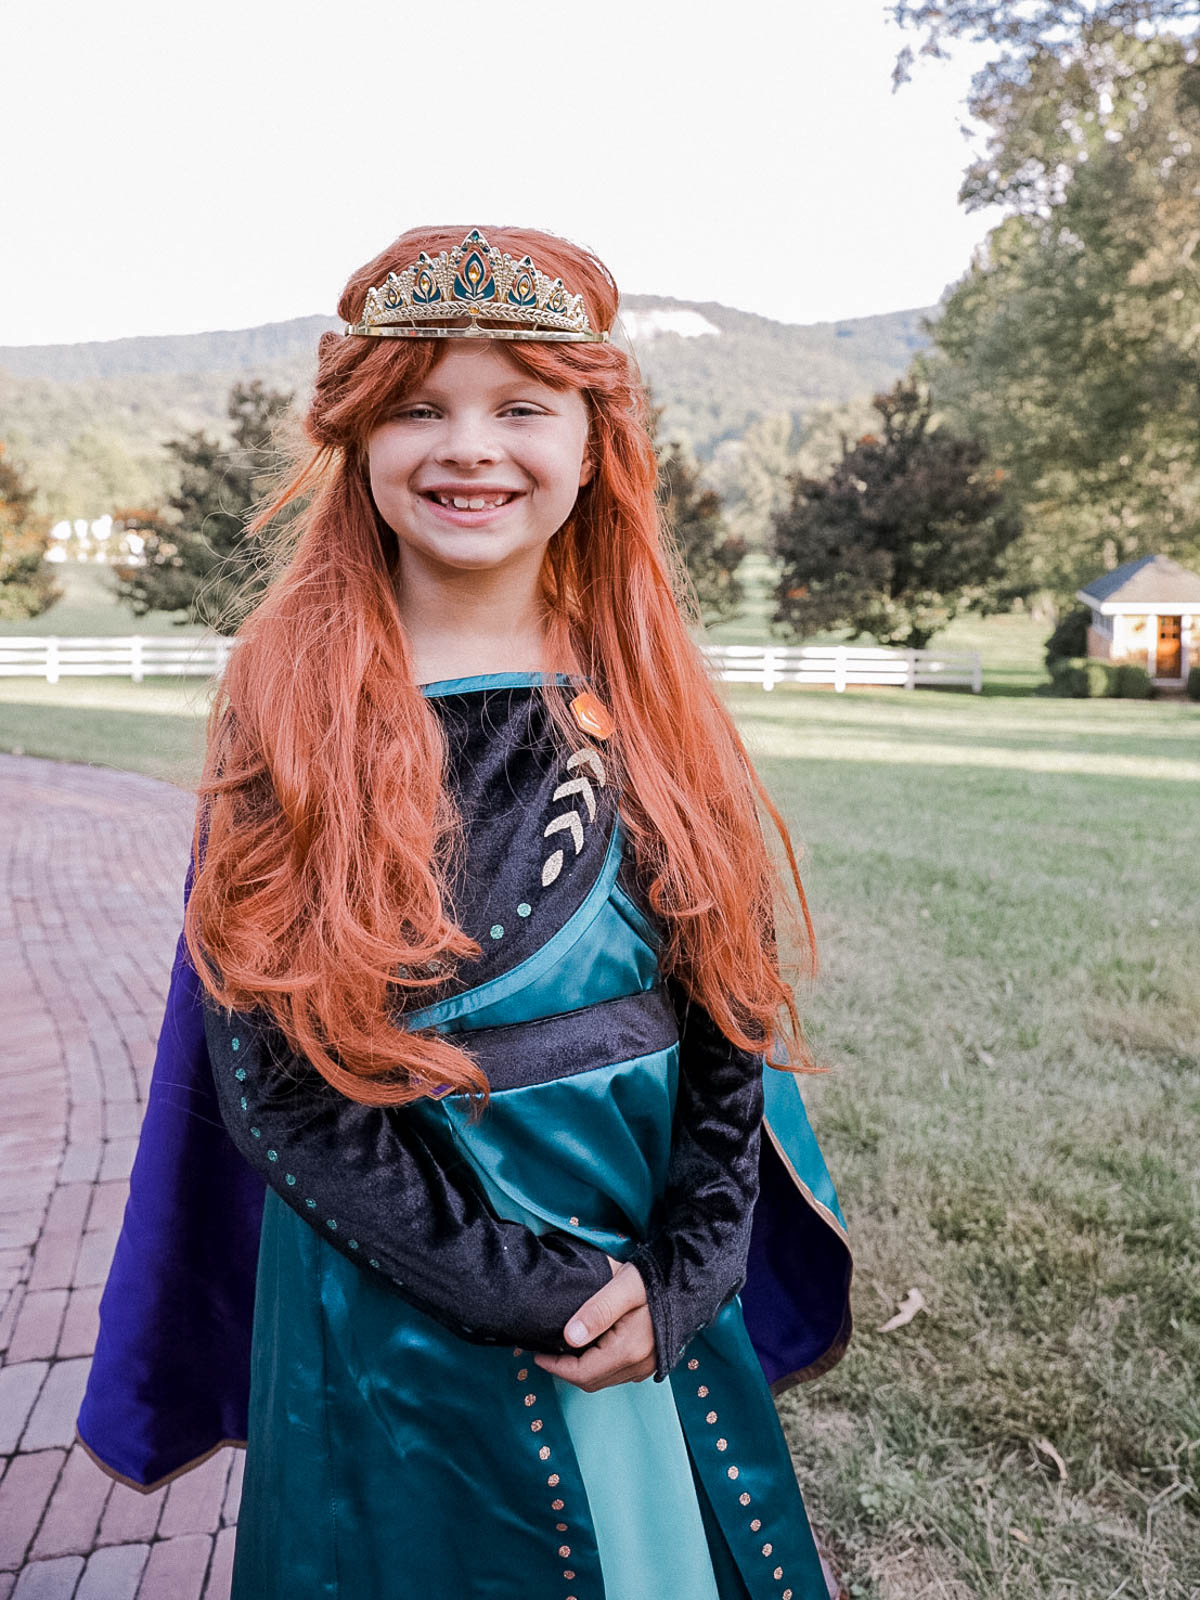 Hayden in her Halloween costume as Anna from Frozen. 